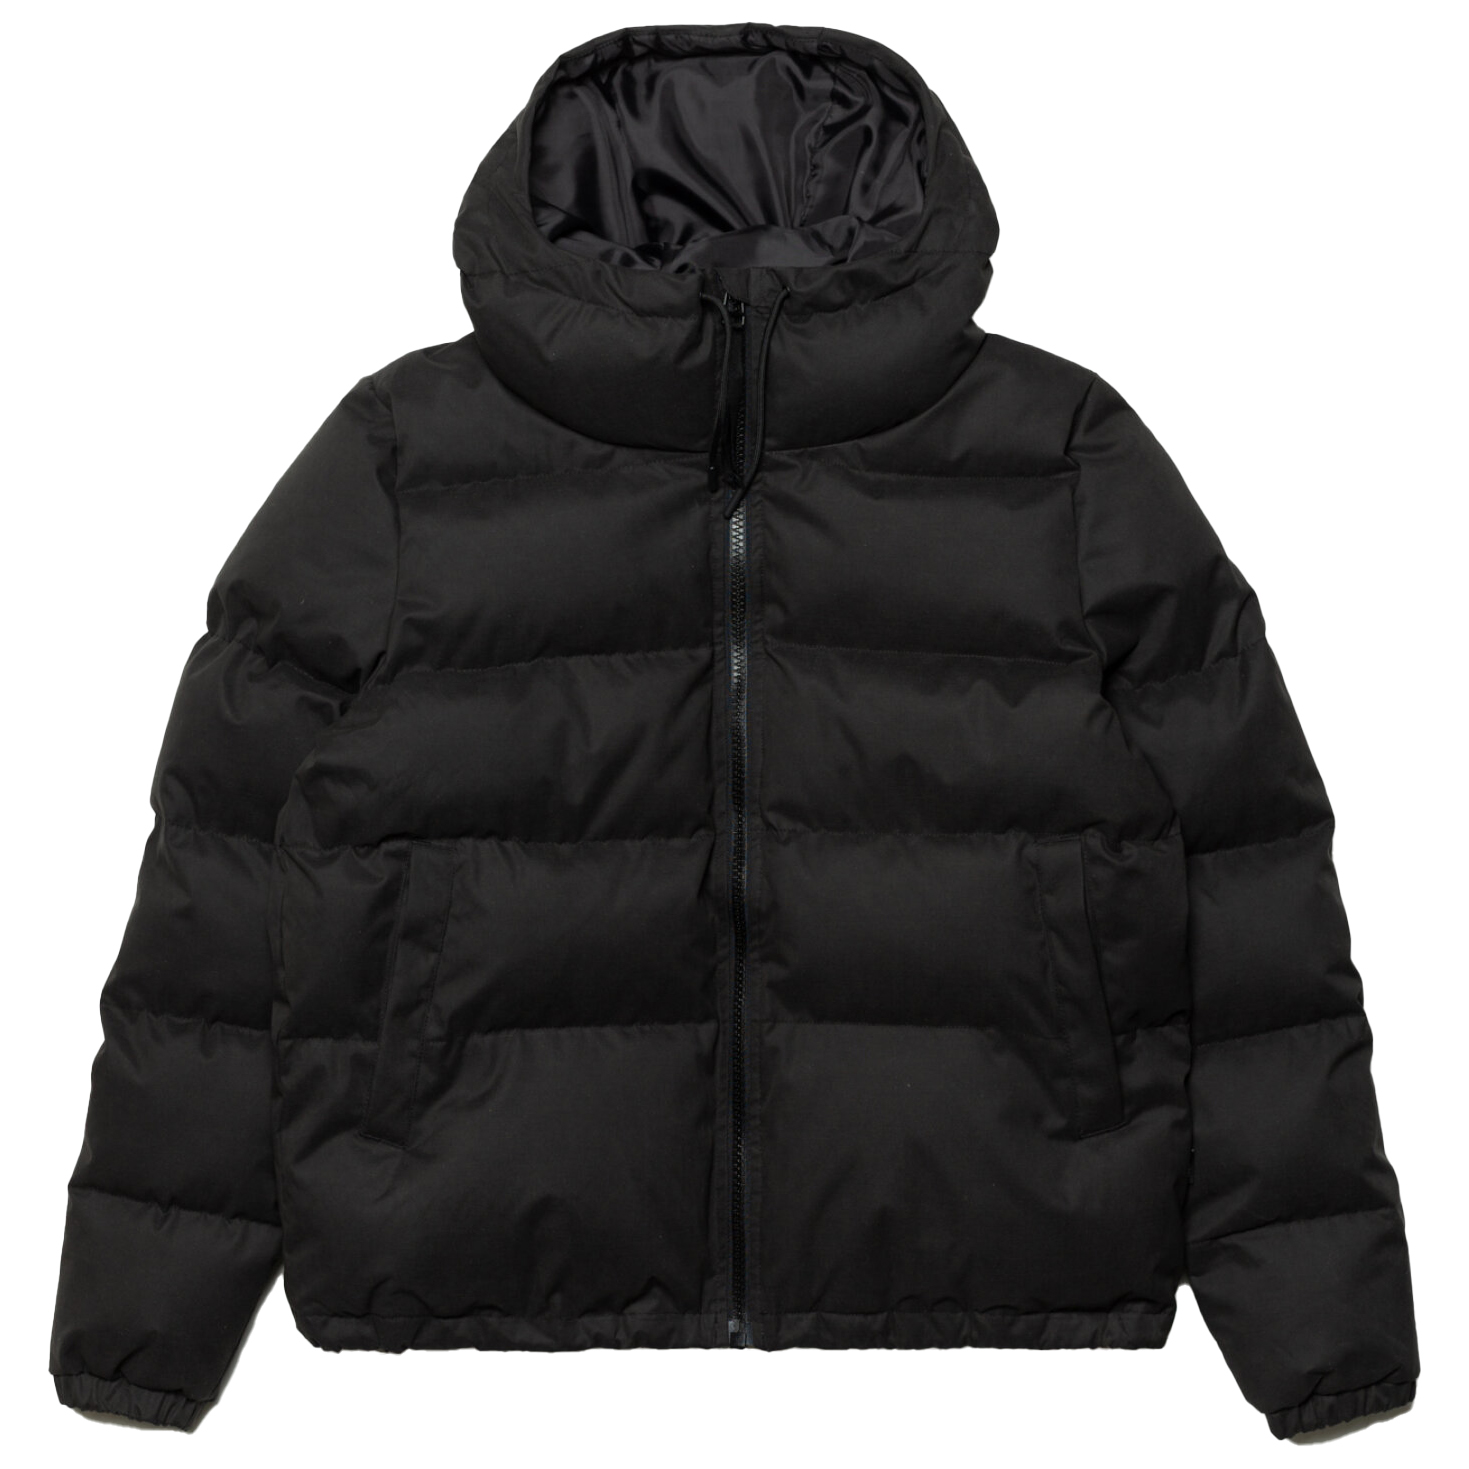 Пальто Selfhood Women's Hooded Puffer, черный куртка стеганая короткая с капюшоном m черный